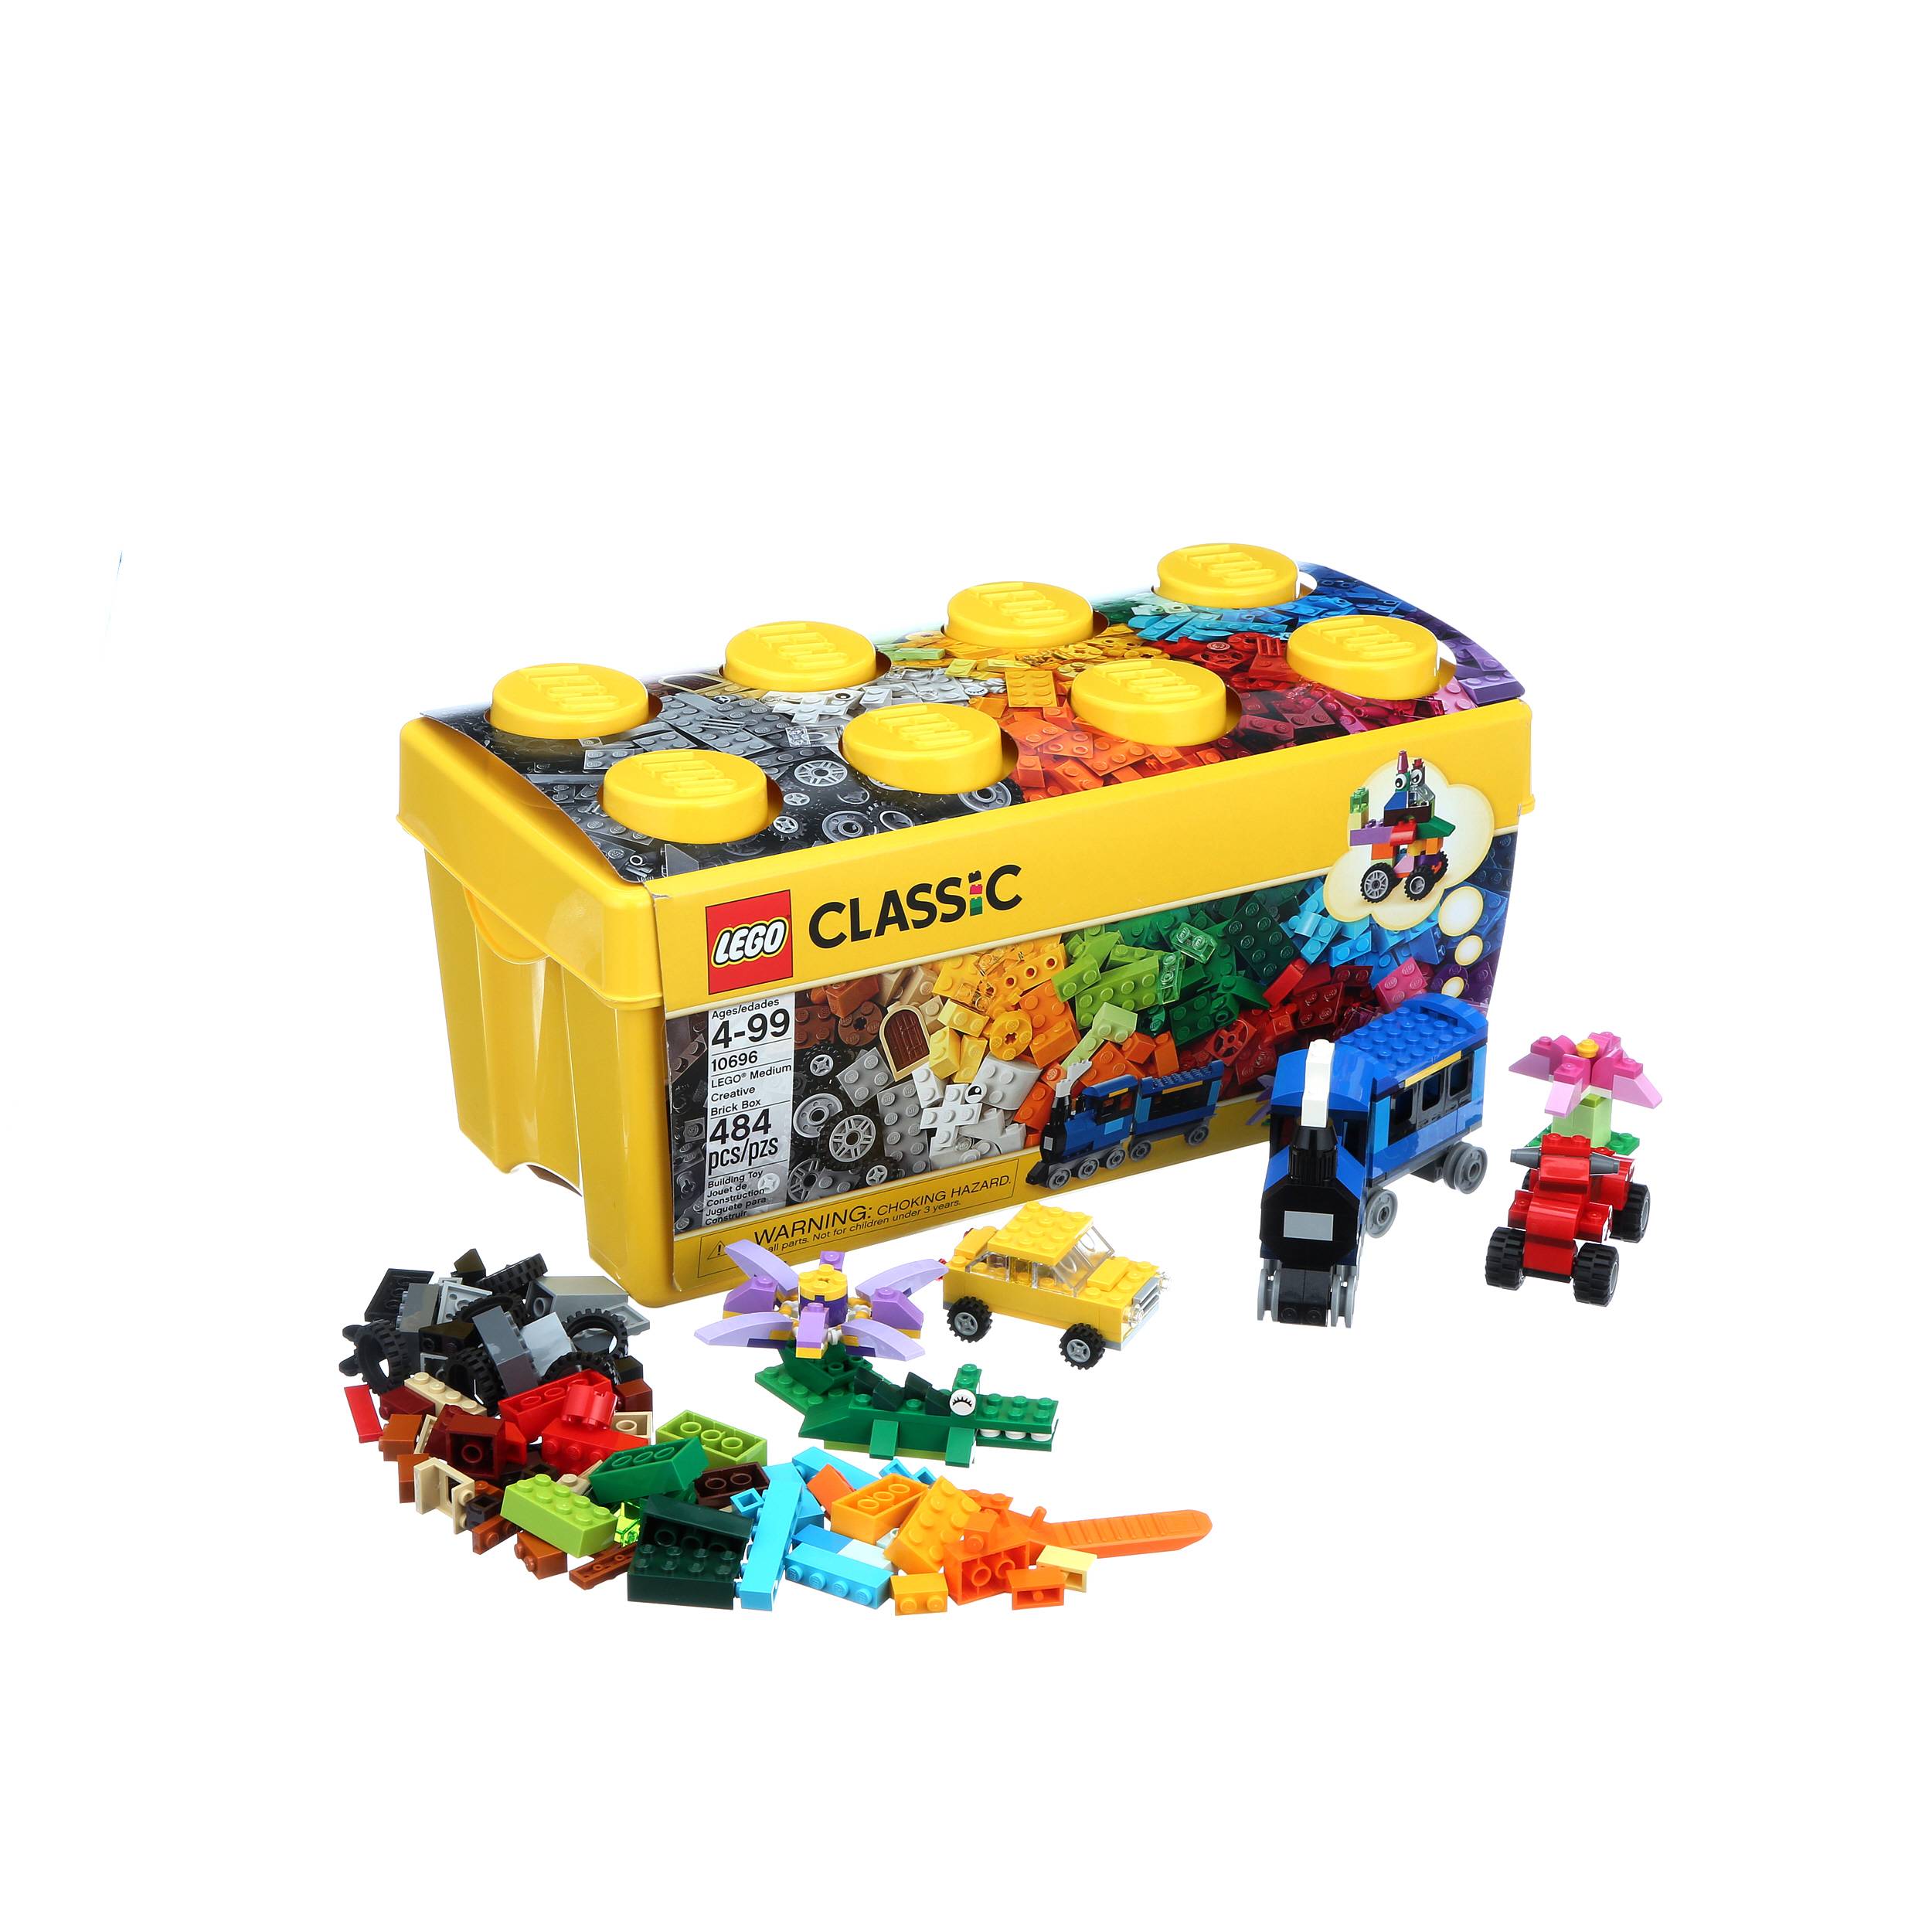 LEGO Classic Medium Creative Brick Box 10696